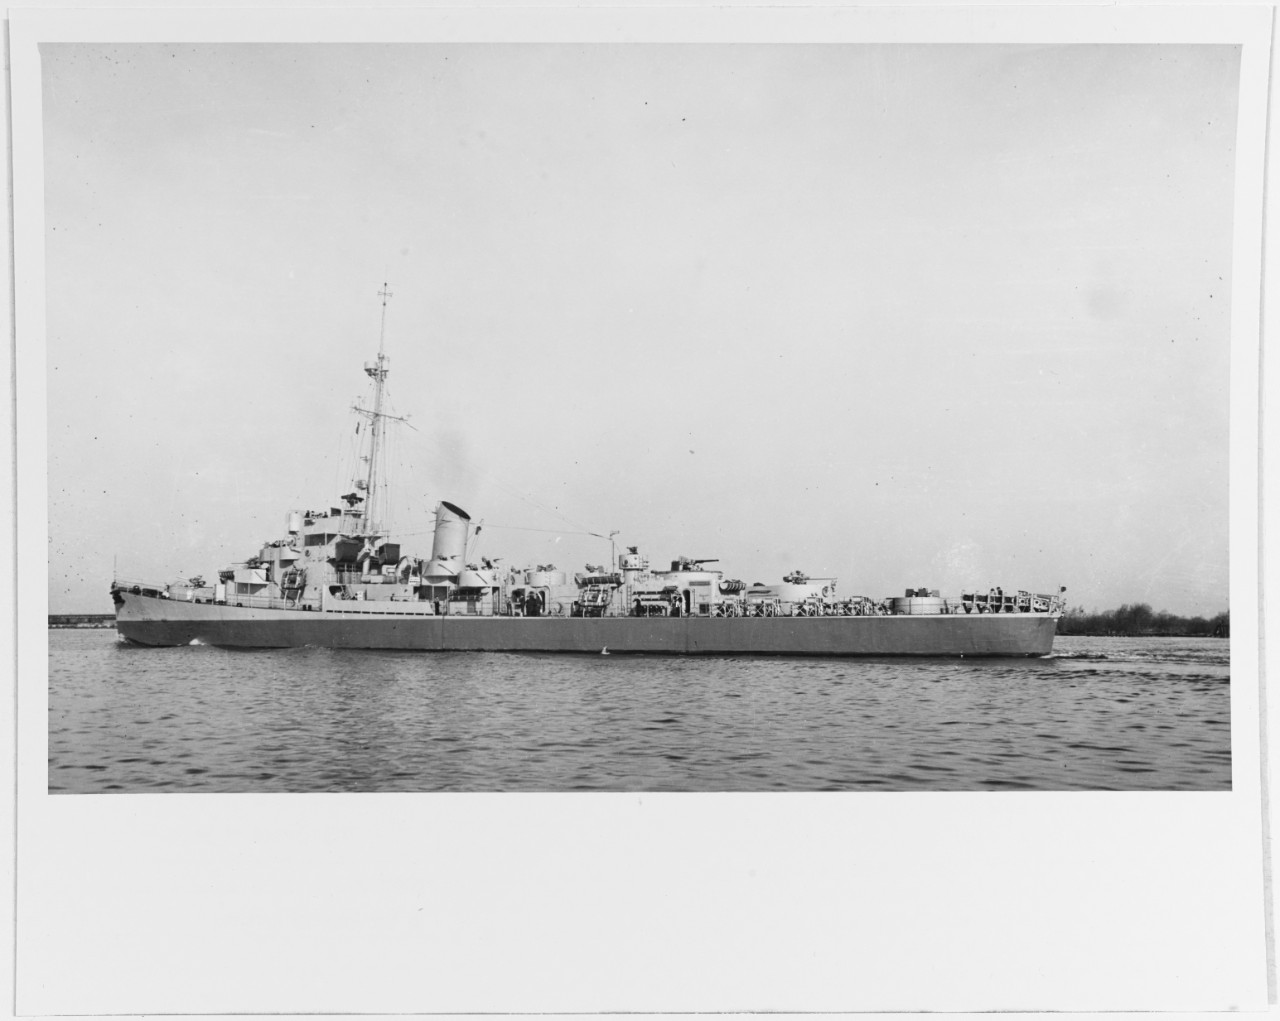 TUNISIEN (French frigate, ex-USS CROSLEY, DE-108)